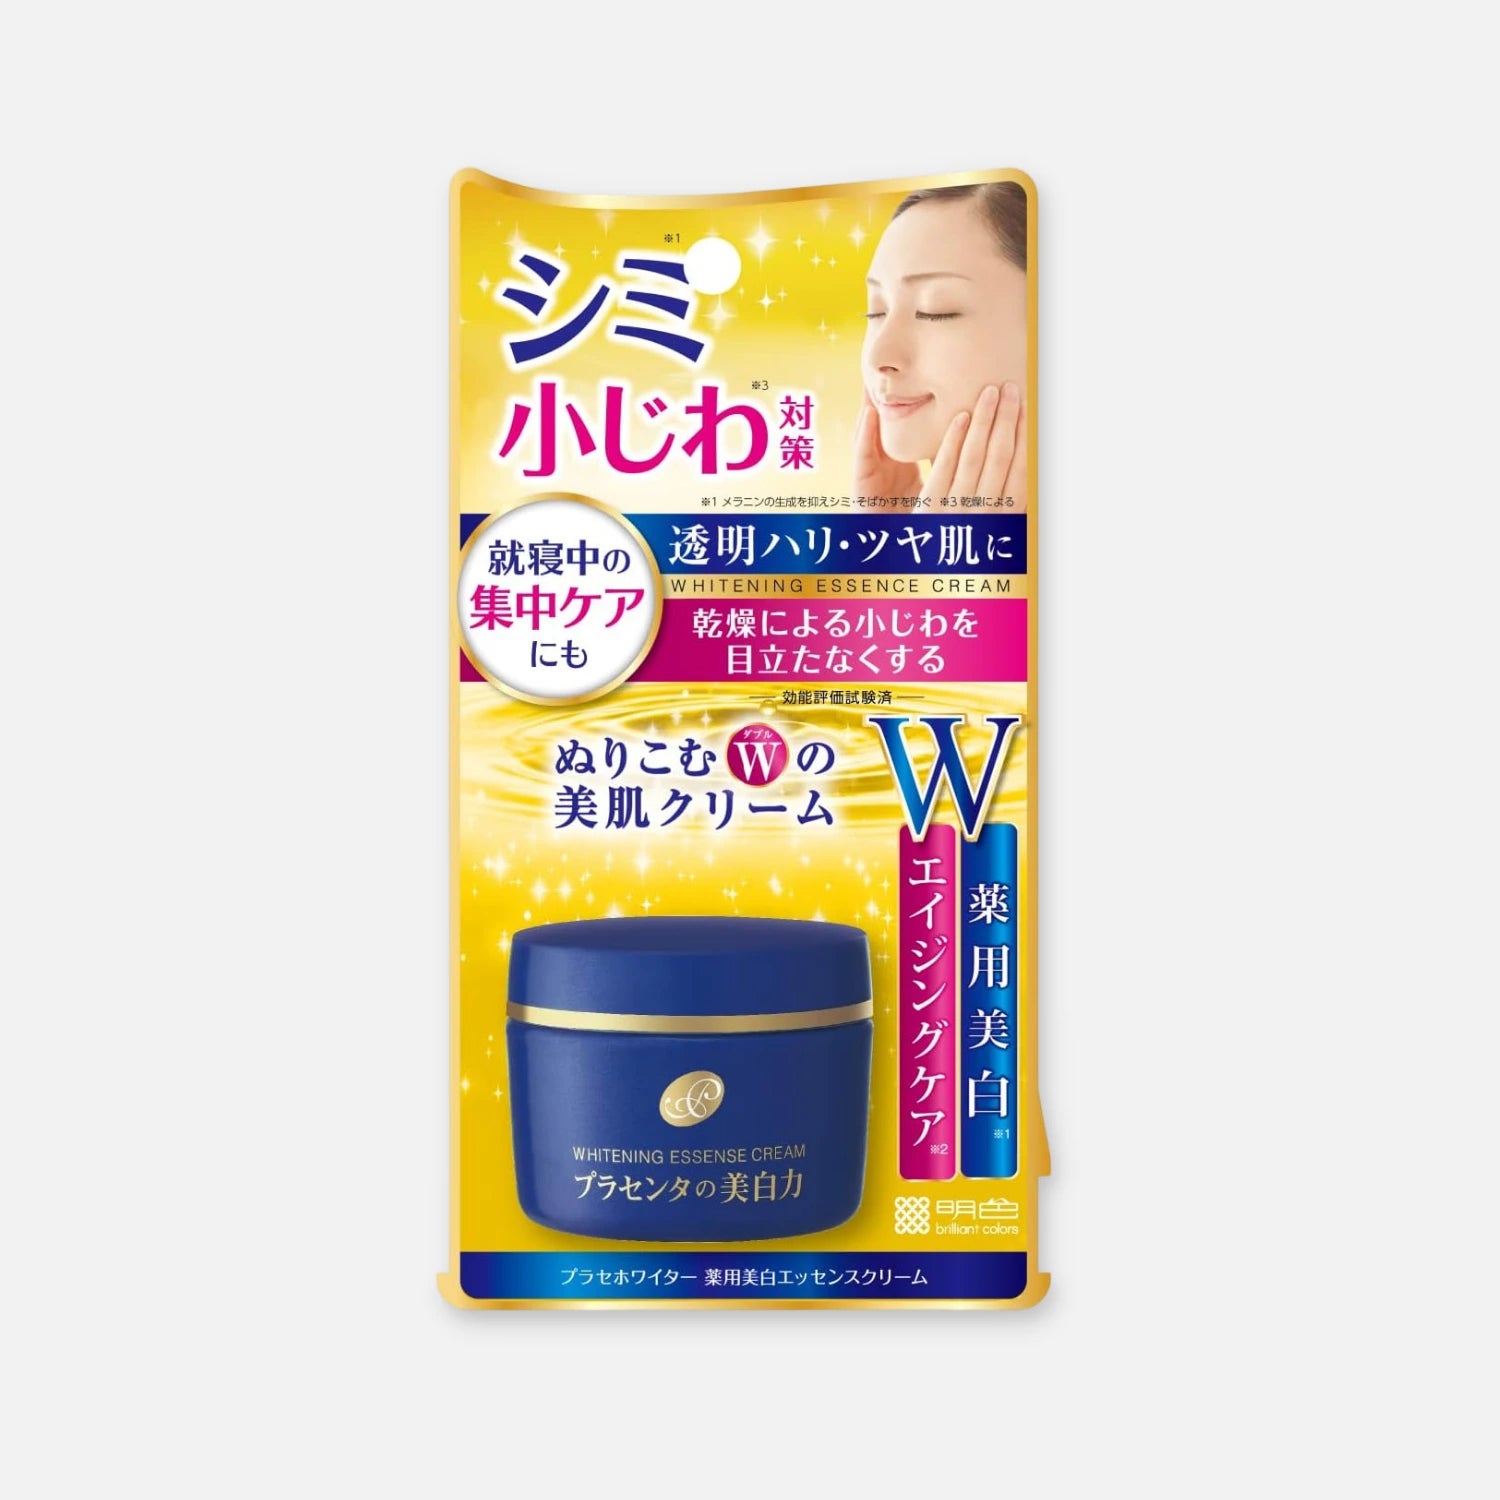 Meishoku Placenta Whitening Essence Cream 55g - Buy Me Japan